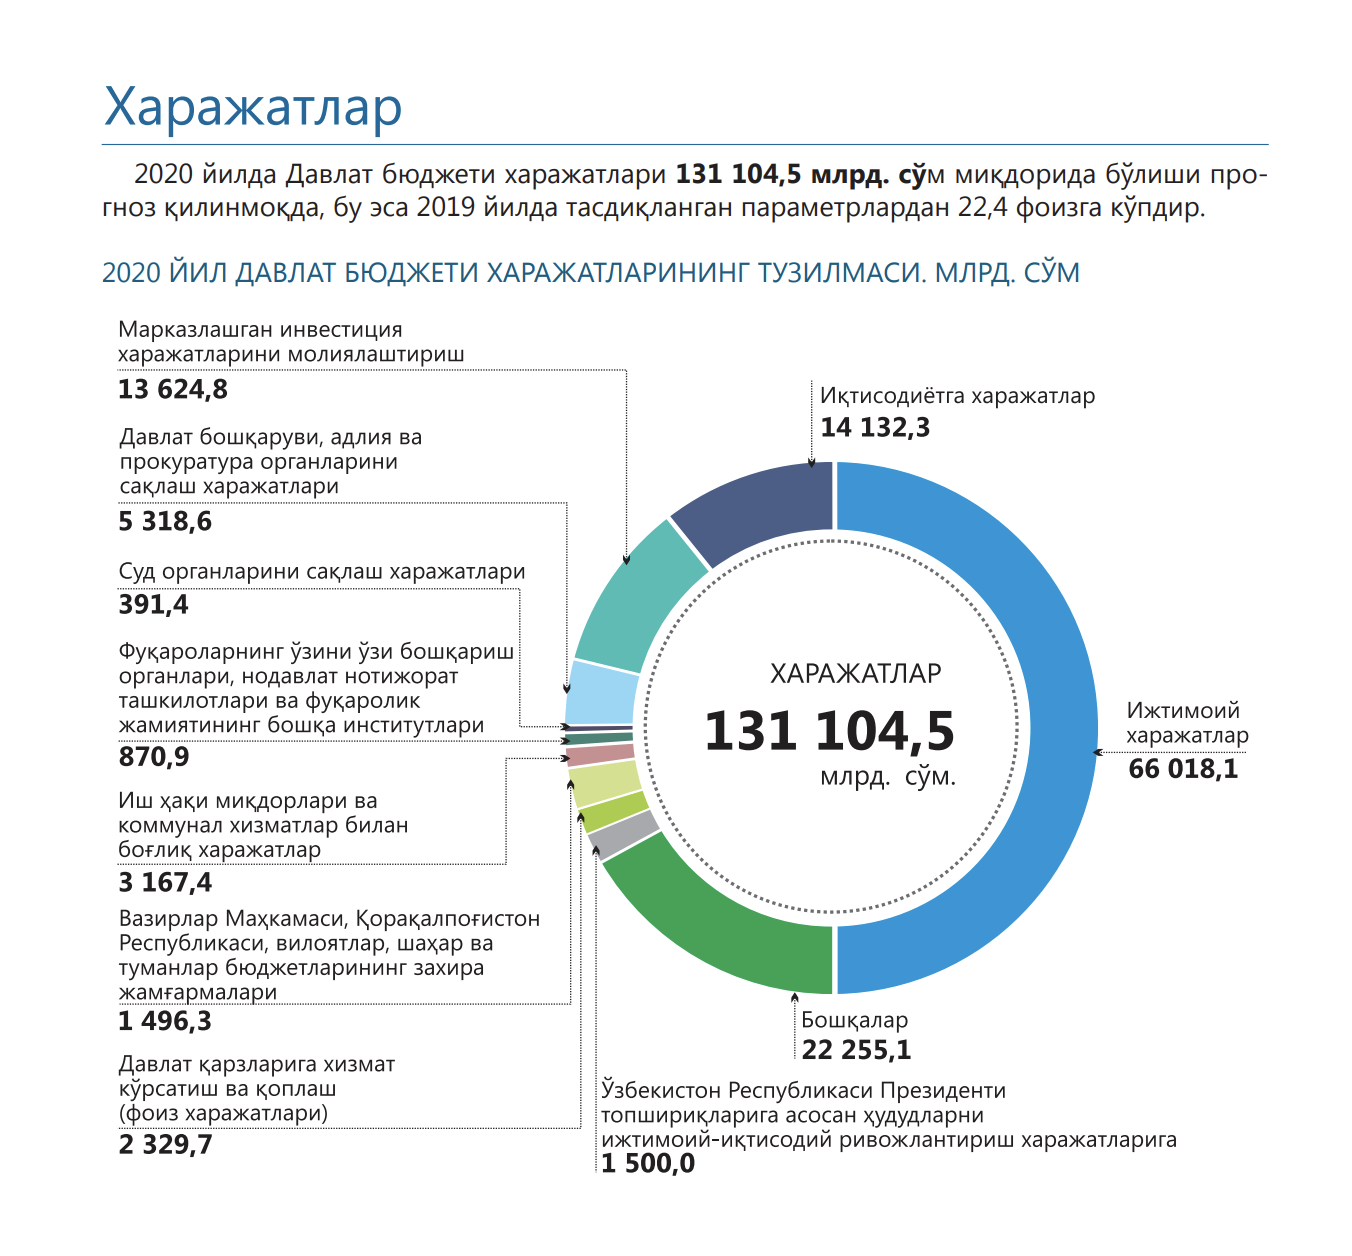 Состояние государственного бюджета рф. Структура расходов госбюджета 2020. Структура госбюджета Узбекистана. Структура доходов госбюджета Узбекистана. Бюджет Узбекистана на 2020.